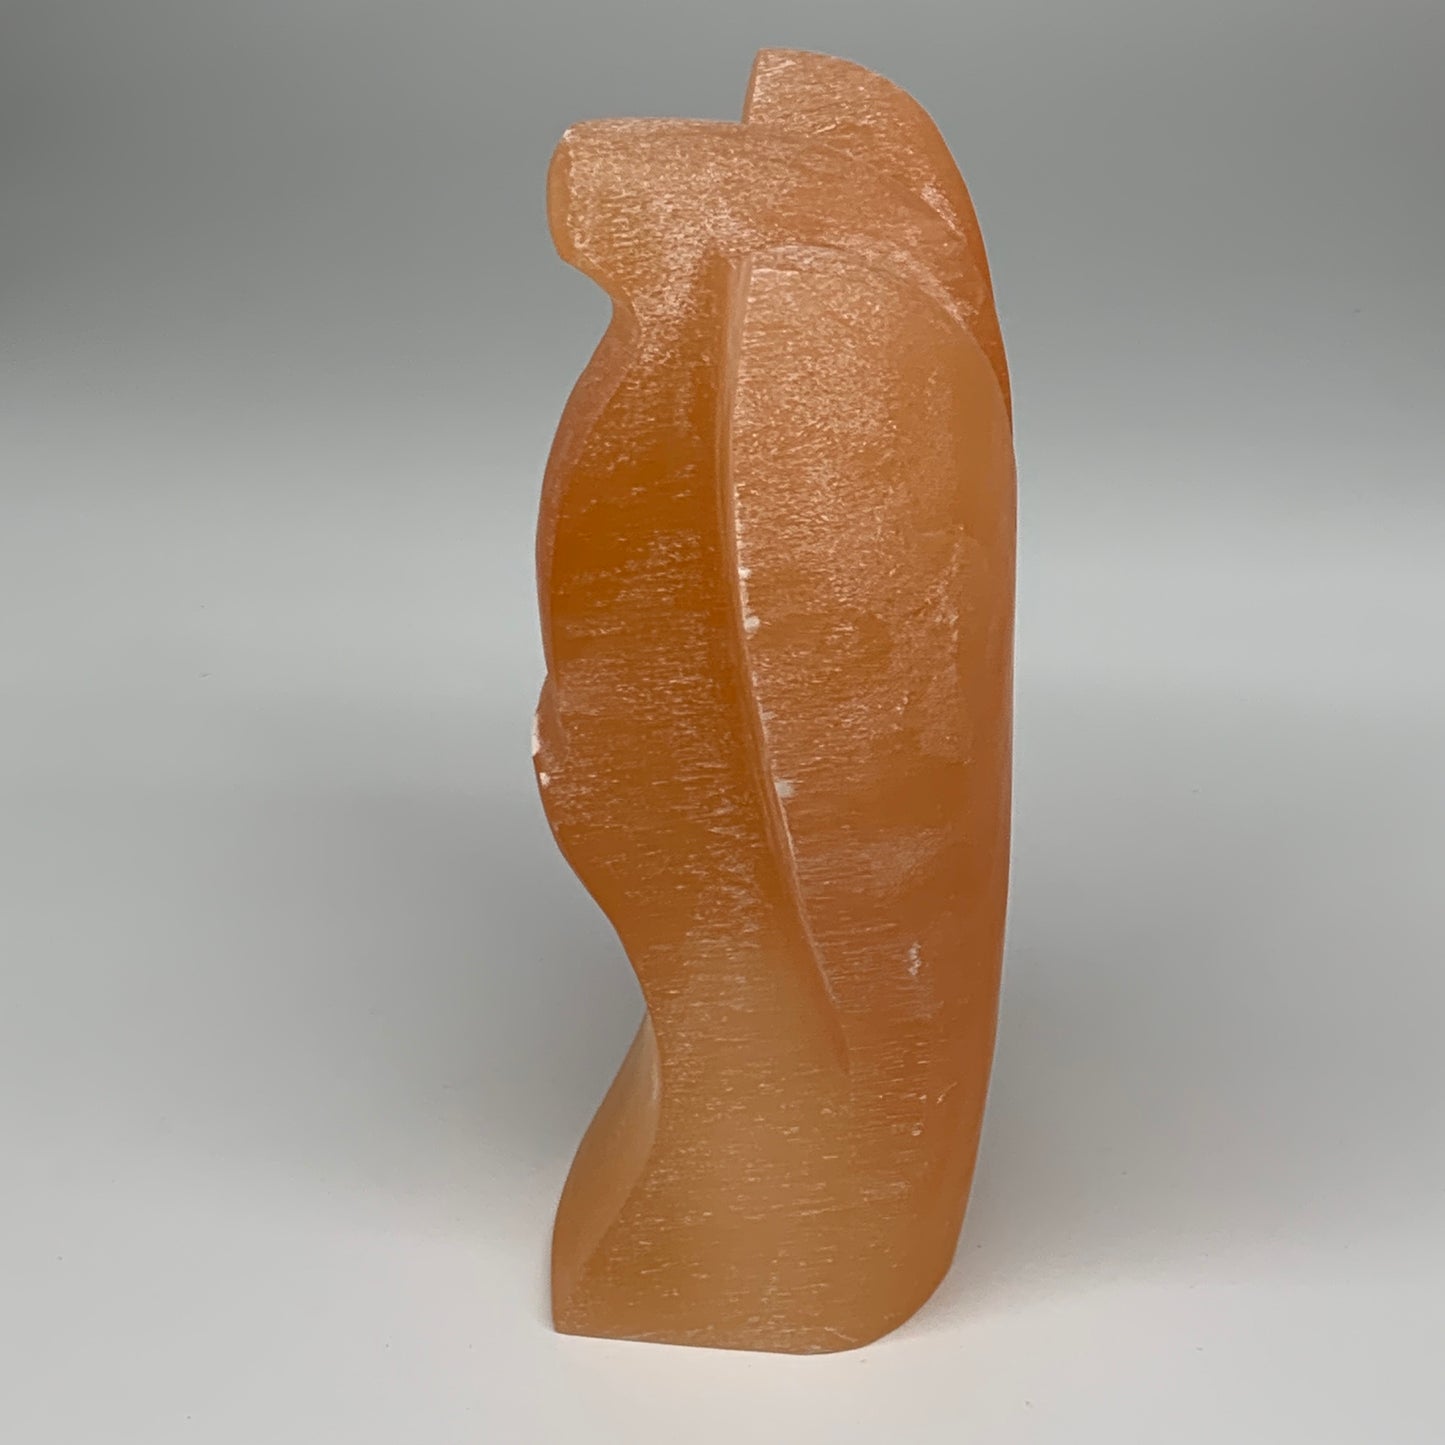 1858g, 8"x4.7"x3" Orange Selenite (Satin Spar) Angel Lamps @Morocco,B9437